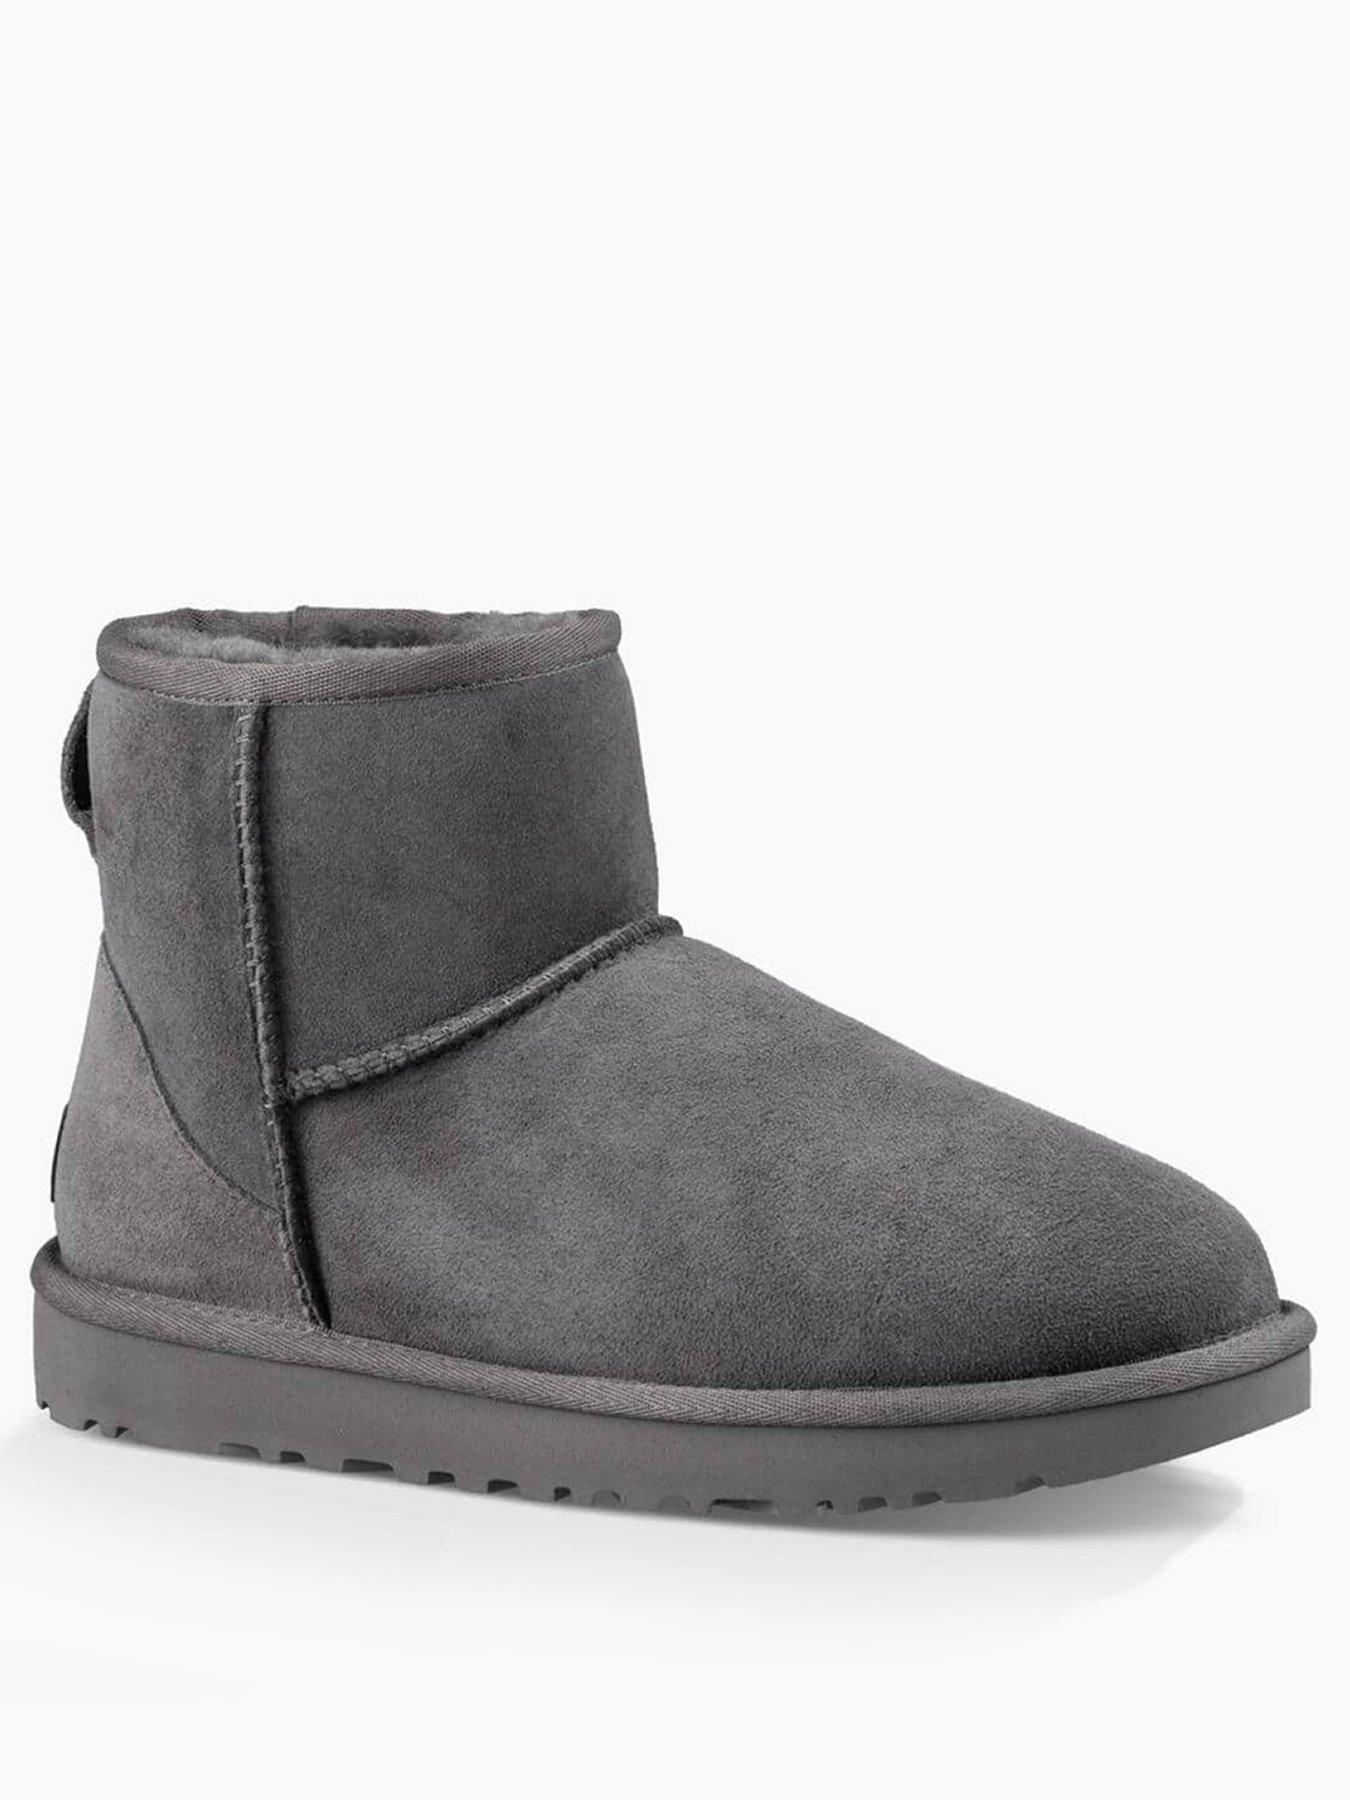 ugg classic mini ii grey boots